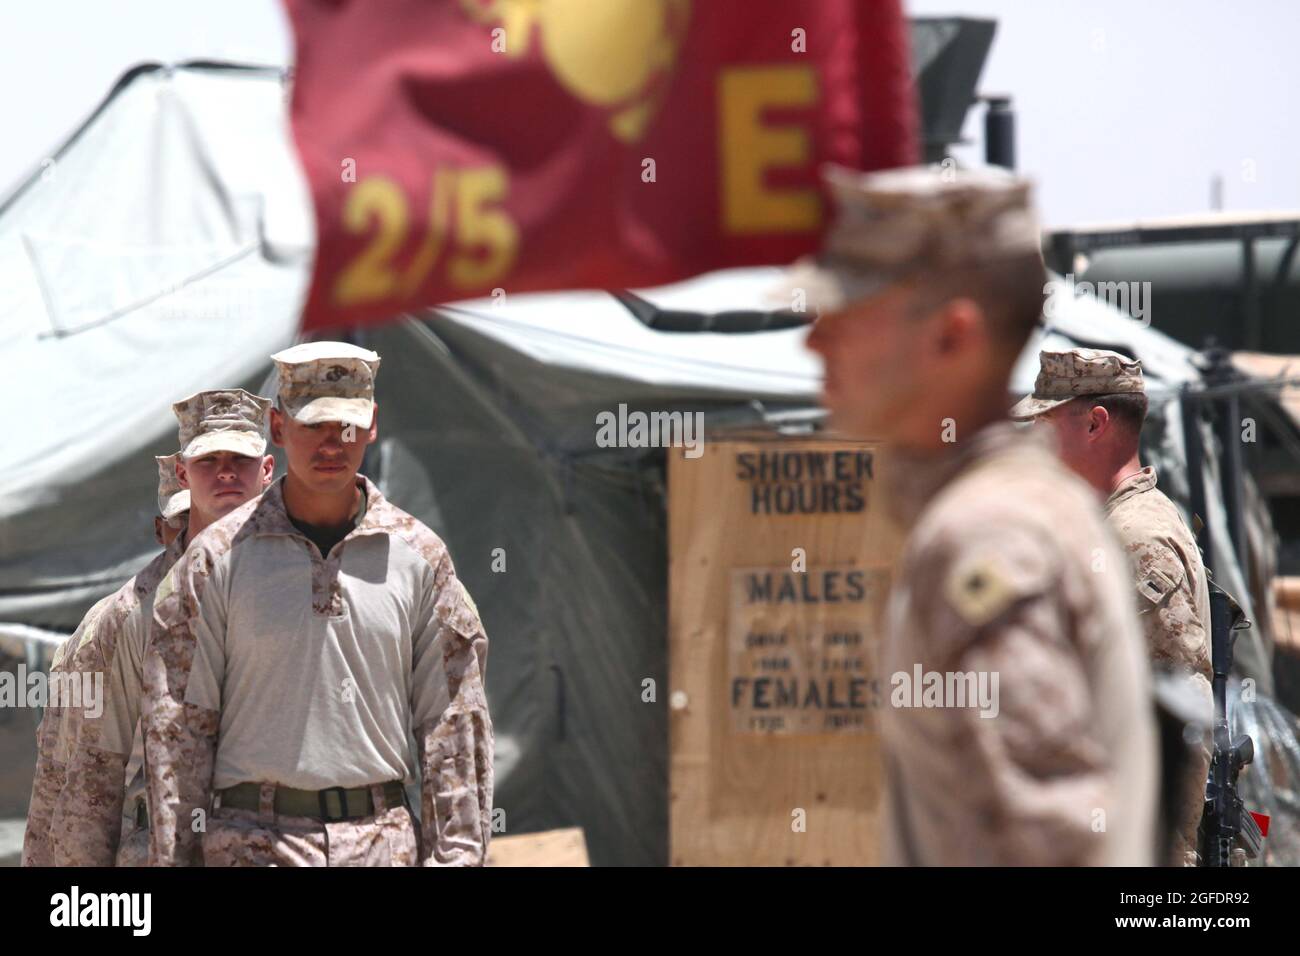 Marines de EE.UU. Con Batallón 2nd, Regimiento Marino 5th, Equipo de Combate Regimental 6, se preparan para llevar a cabo una Ceremonia del Corazón Púrpura a bordo de la Base Operativa Forward Shir Ghazay, provincia de Helmand, Afganistán 22 de junio de 2012. El Corazón Púrpura se otorga a los miembros de las Fuerzas Armadas de los Estados Unidos que han sido muertos o heridos como resultado de la acción enemiga. (EE.UU Marine Corps foto por Sgt. David R. Hernández/Publicado) Foto de stock